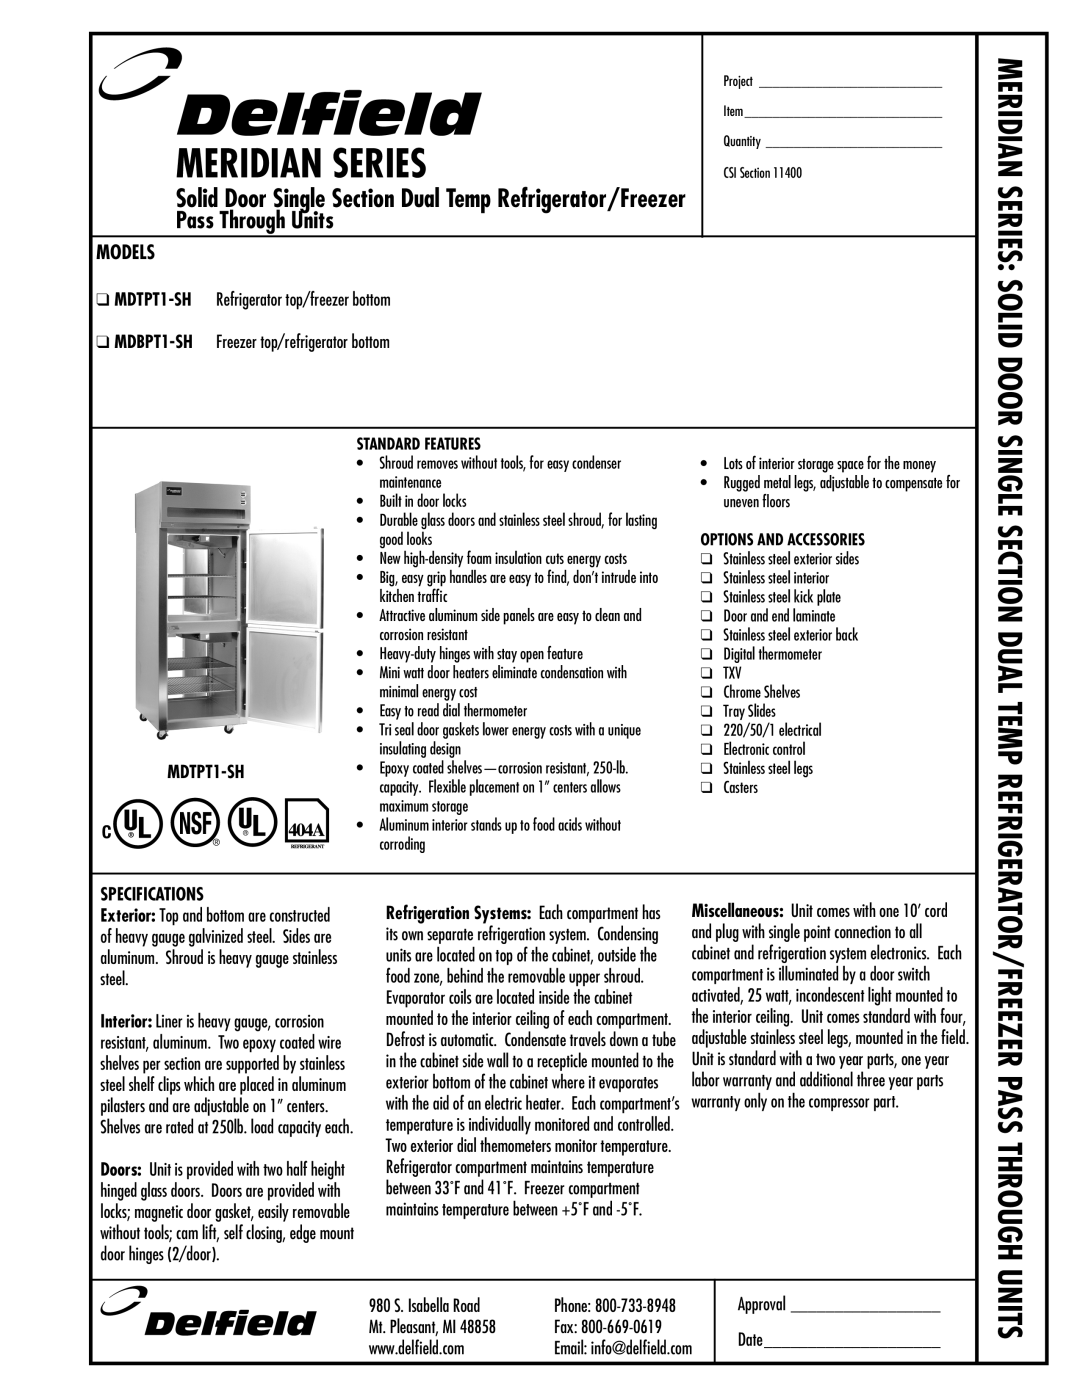 Delfield specifications MDTPT1-SH Refrigerator top/freezer bottom, MDBPT1-SH Freezer top/refrigerator bottom, Approval 